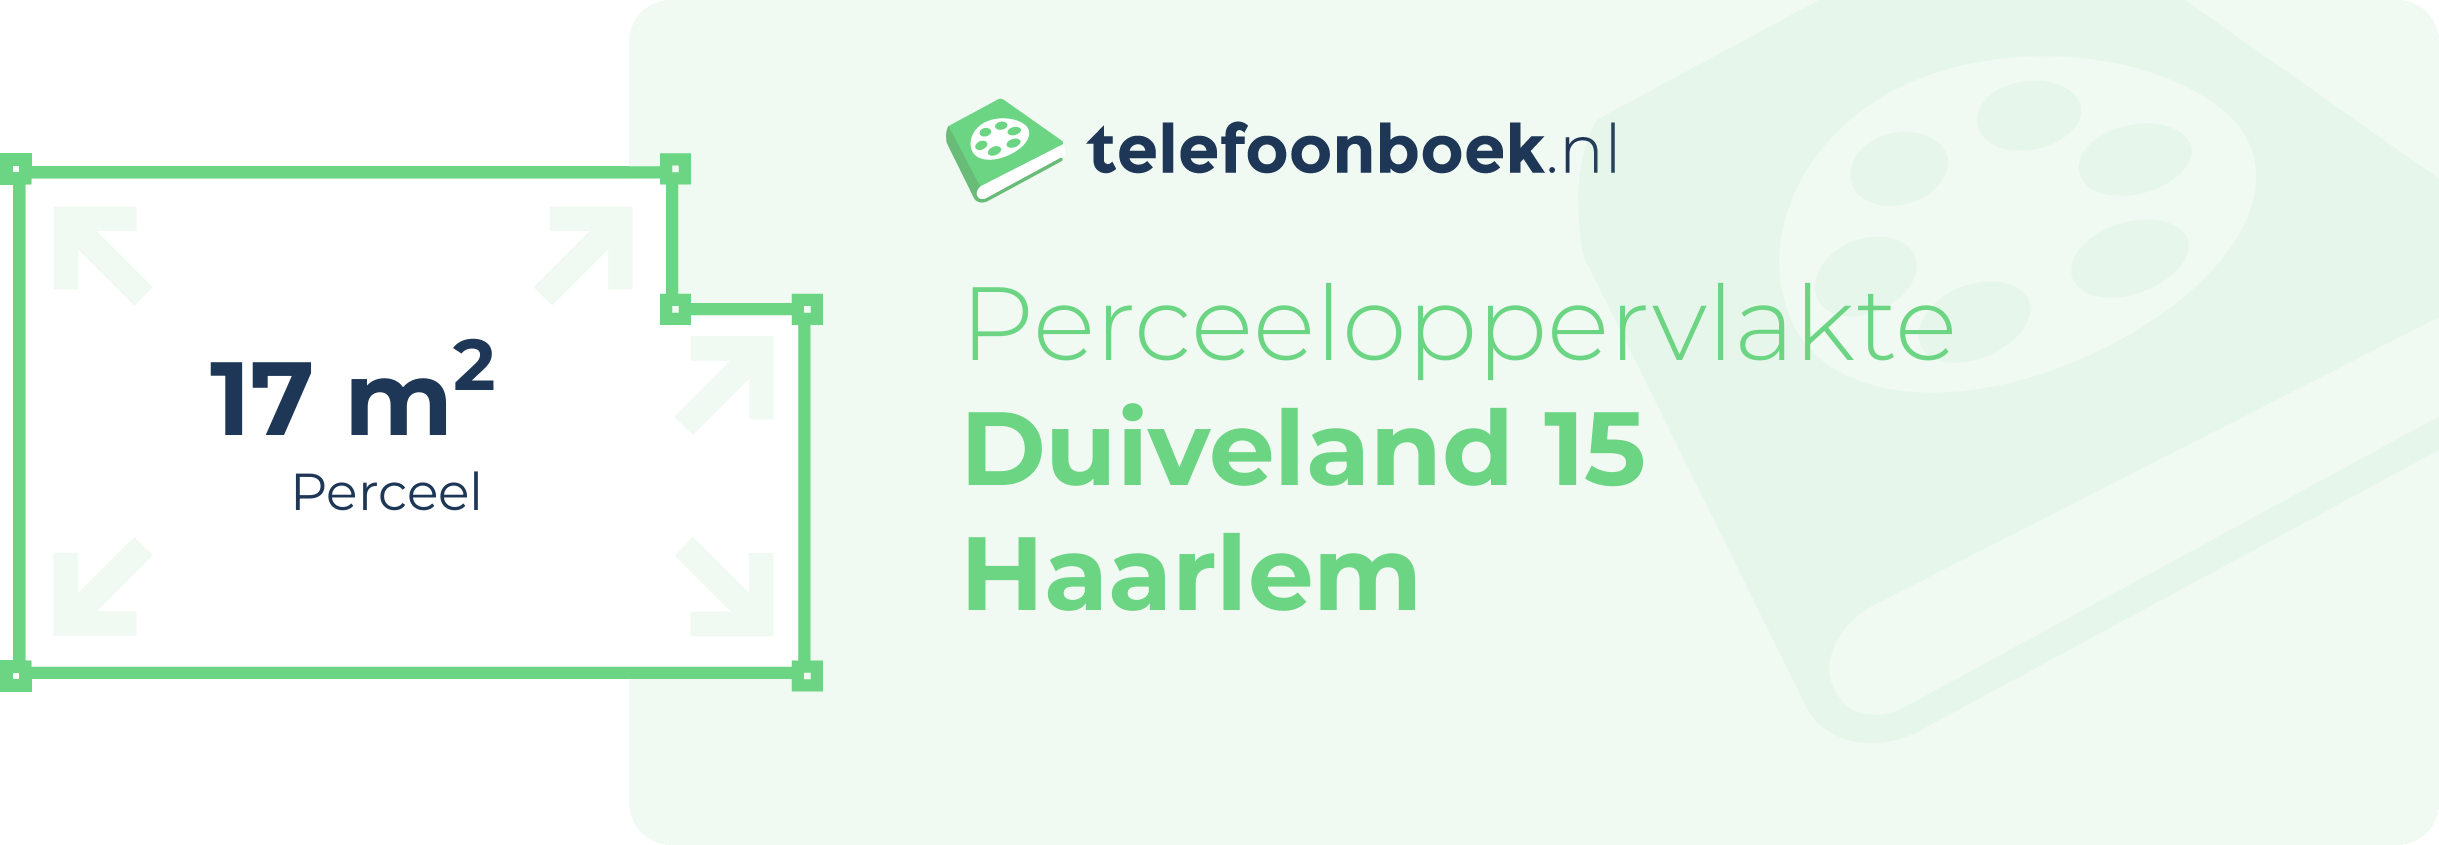 Perceeloppervlakte Duiveland 15 Haarlem